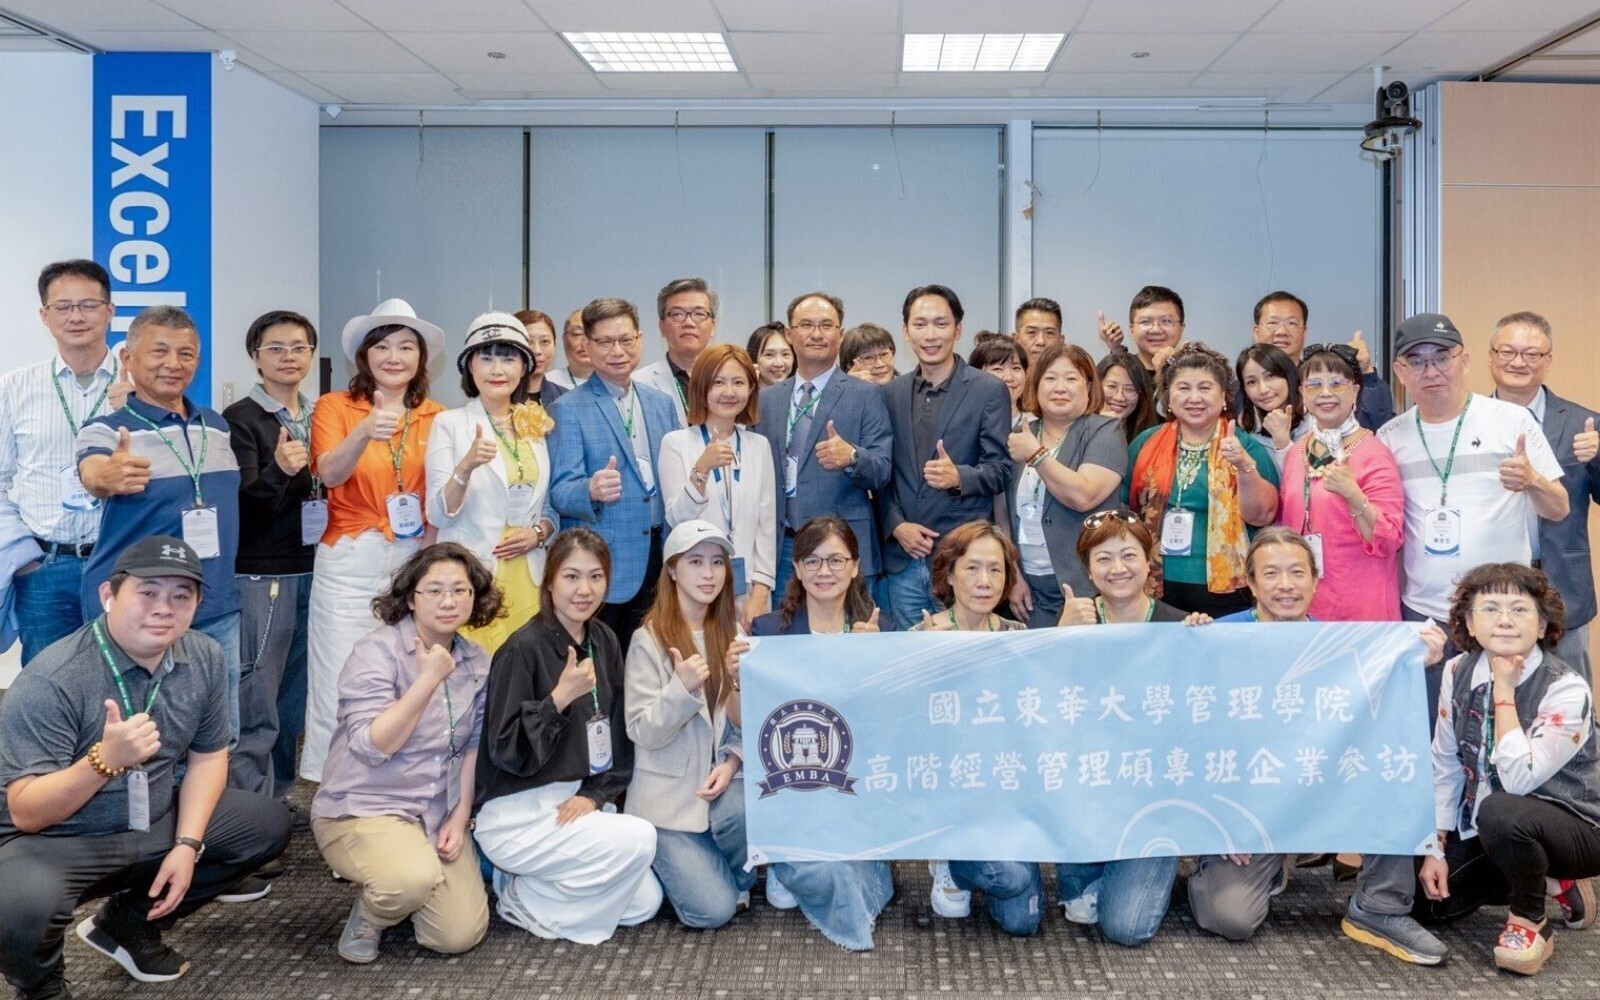 東華大學EMBA赴臺北、臺中參訪企業成果豐碩